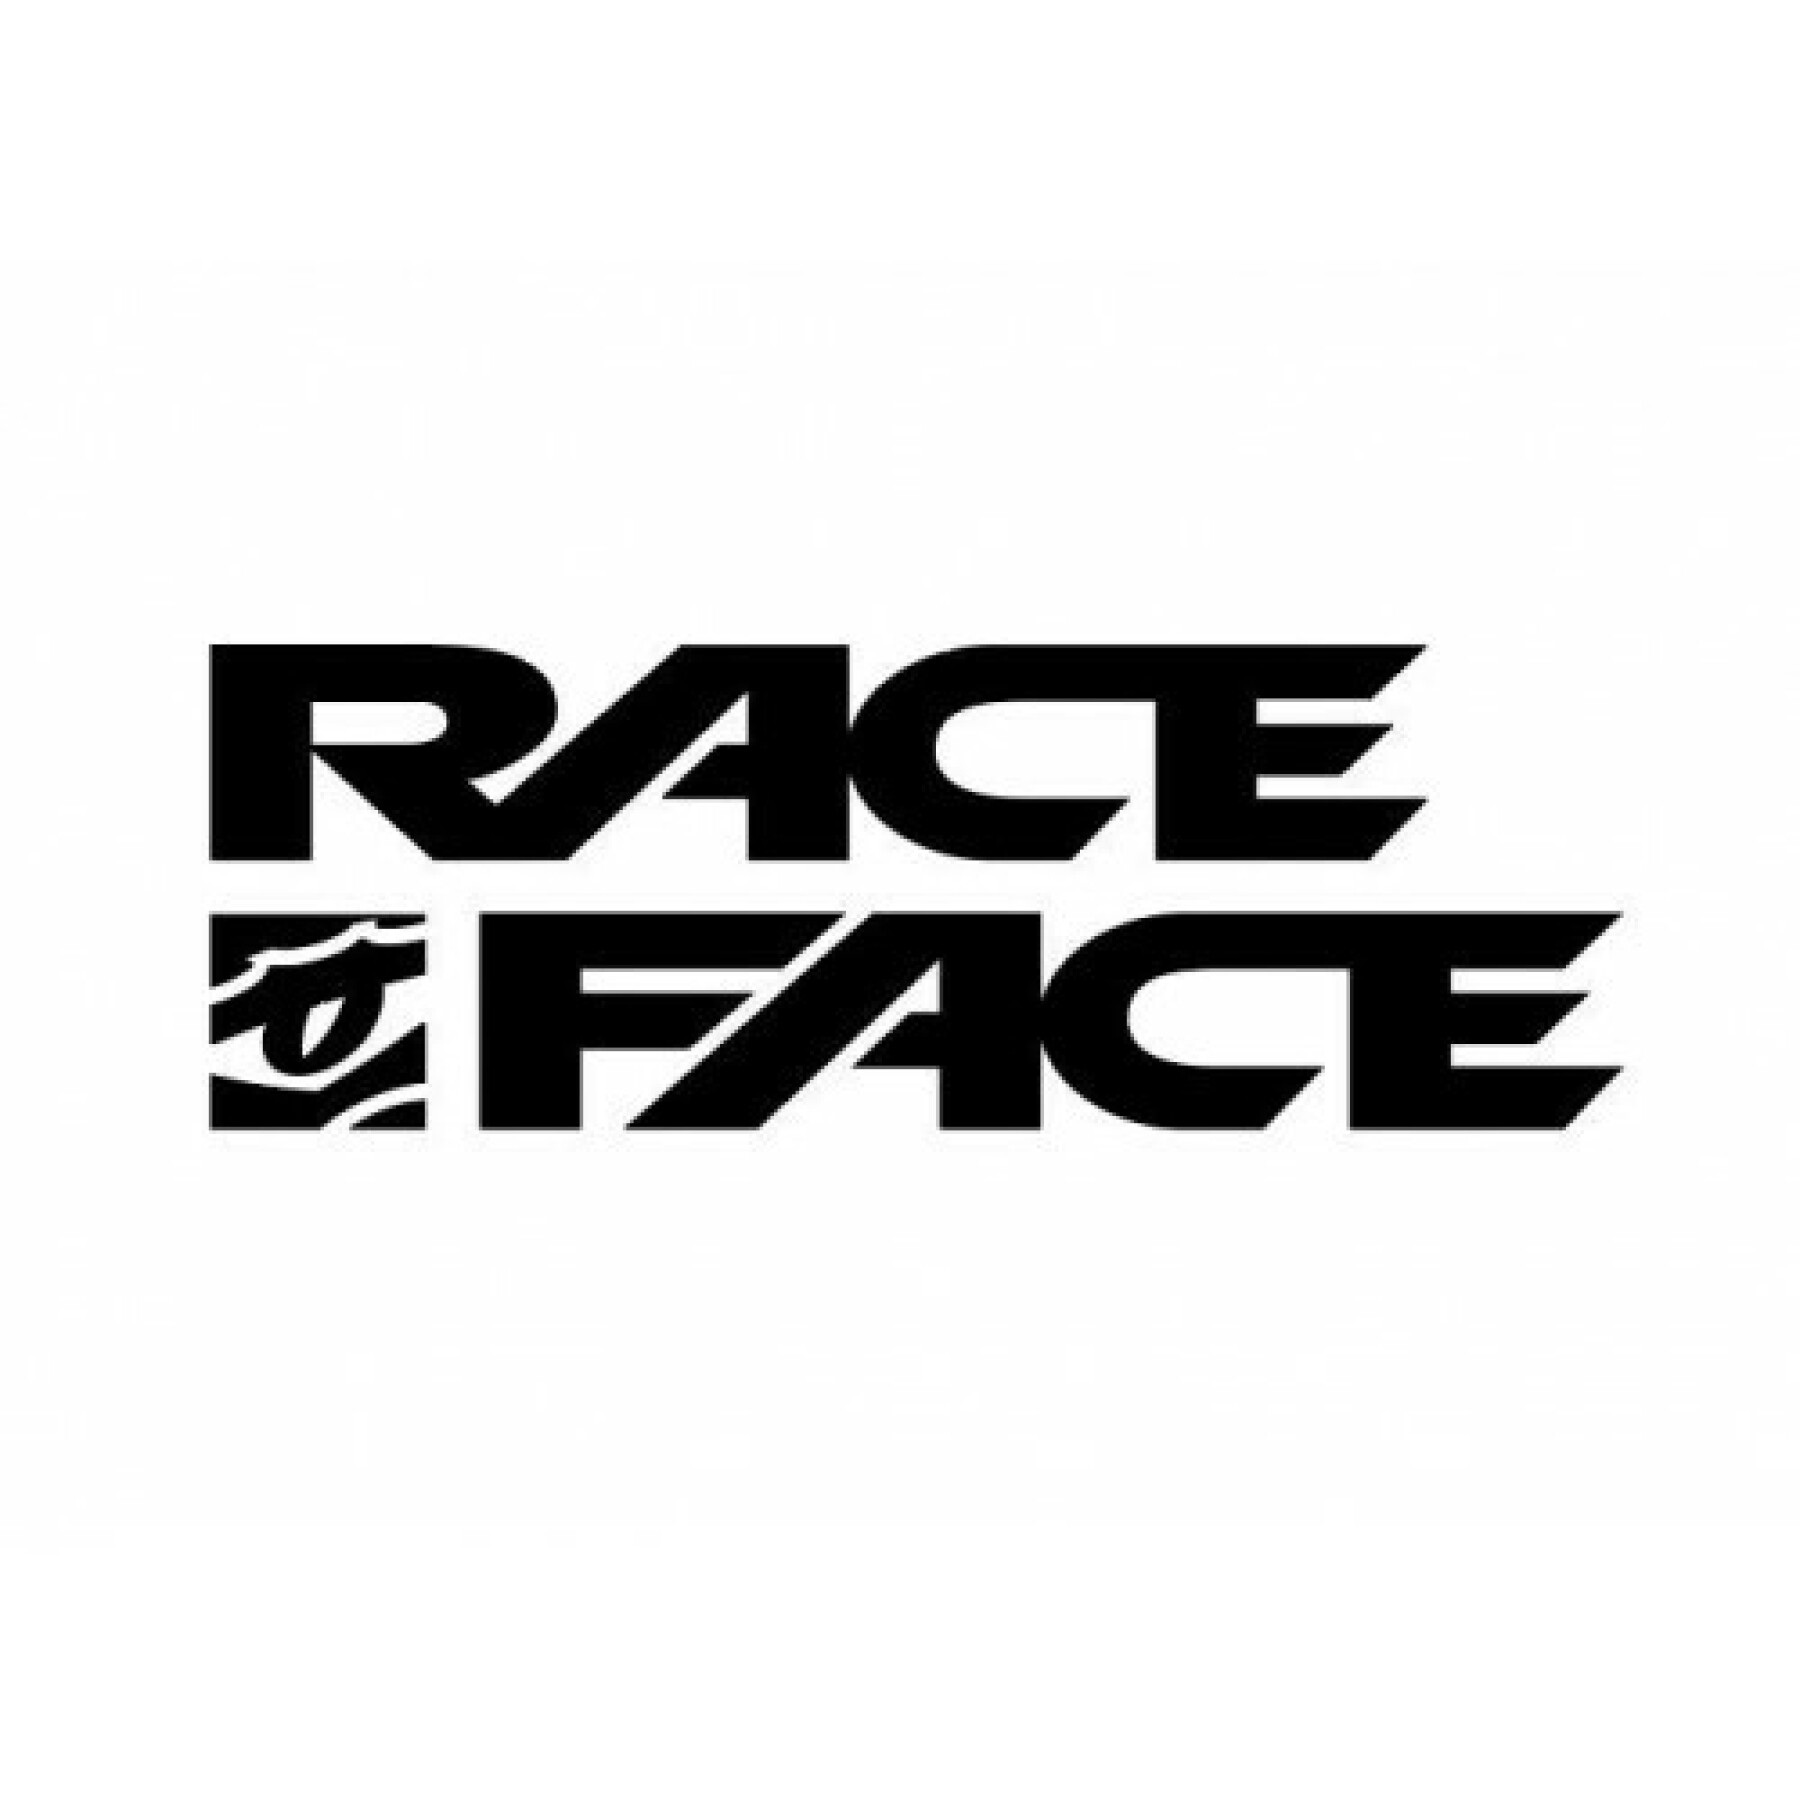 Rim Race Face arc offset - 35 - 29 - 32t